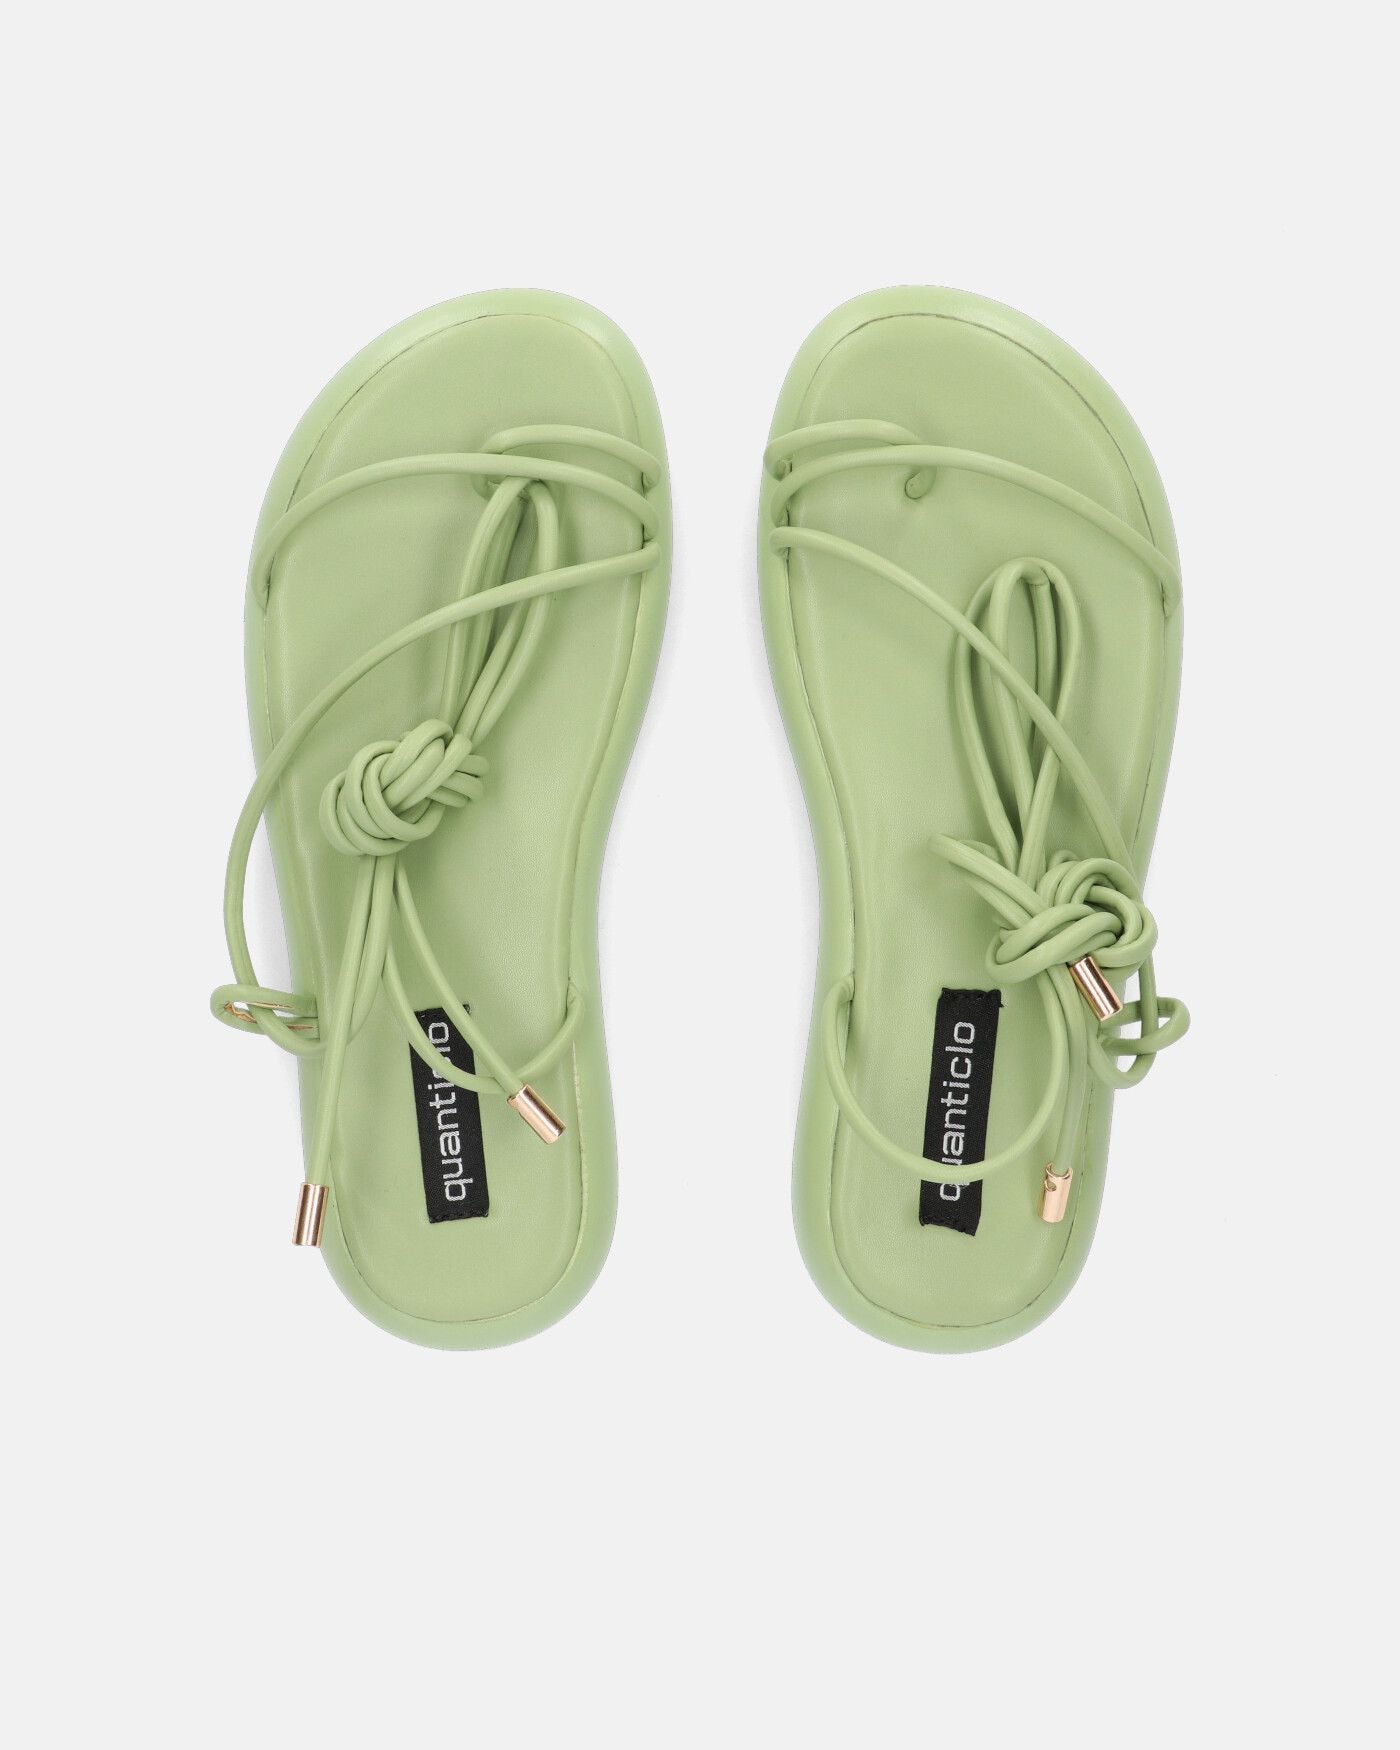 LACEY - sandali infradito bassi verdi con lacci